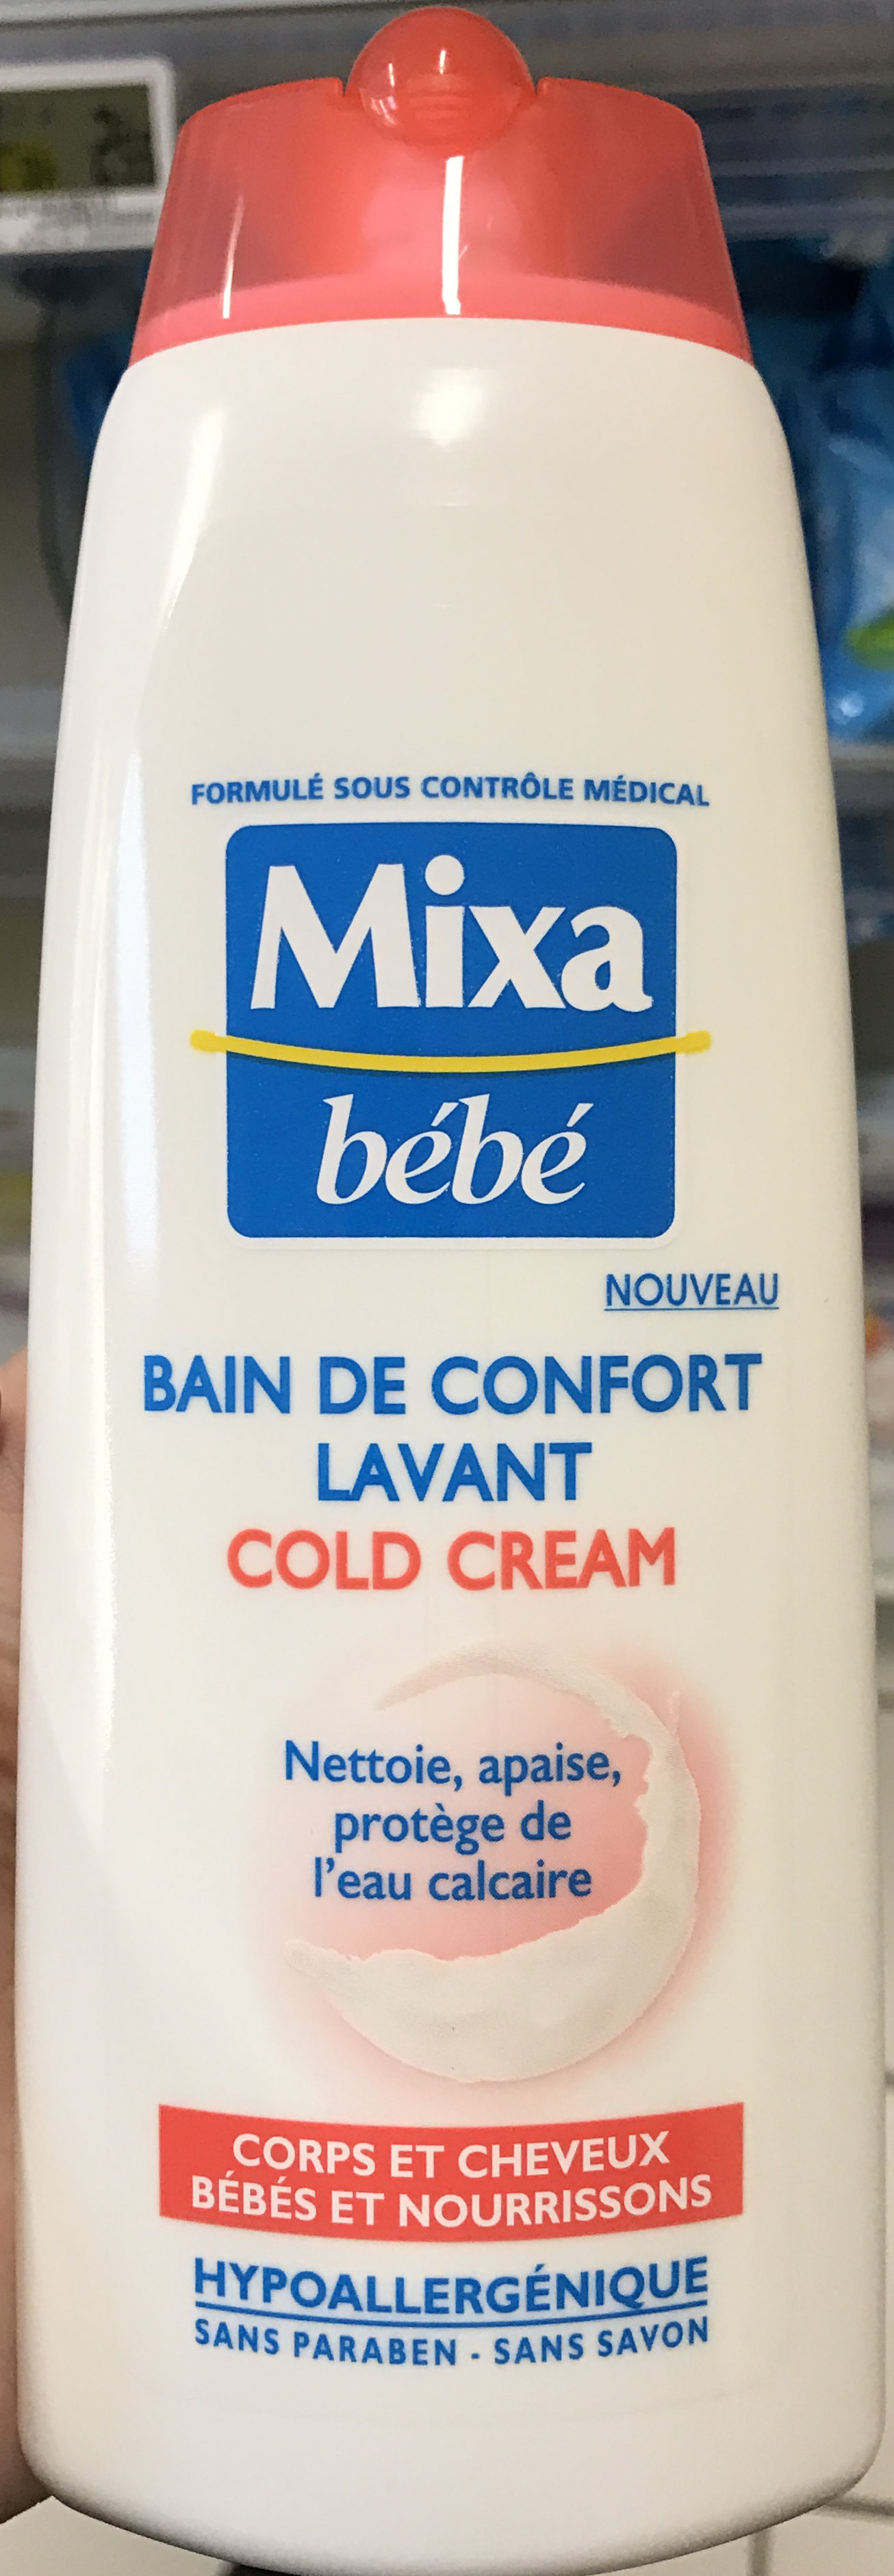 Bain de confort lavant Cold Cream - Product - fr